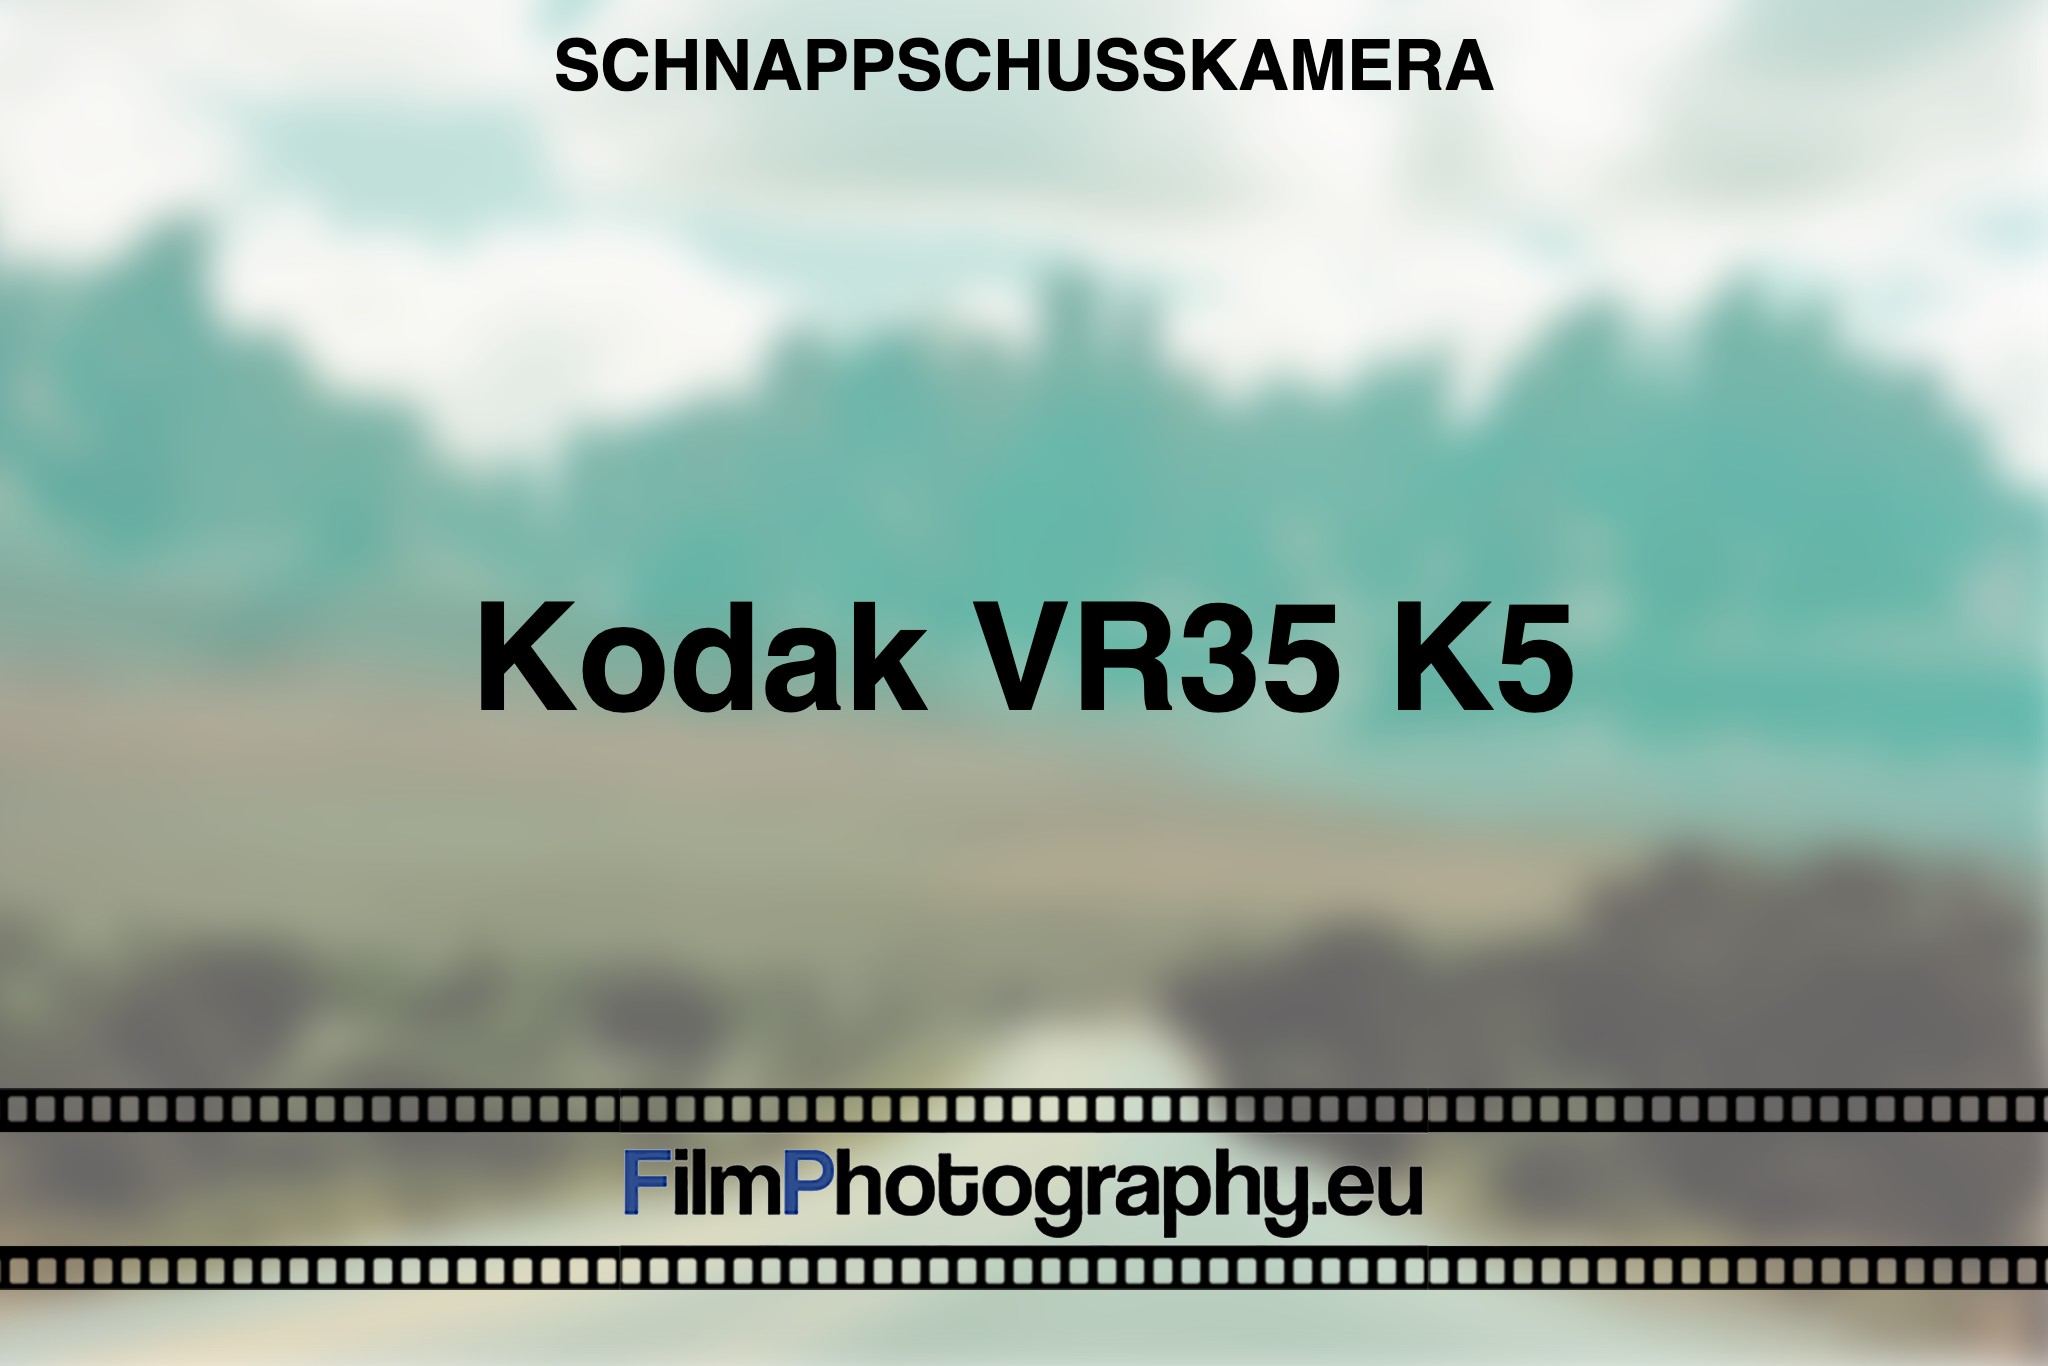 kodak-vr35-k5-schnappschusskamera-bnv